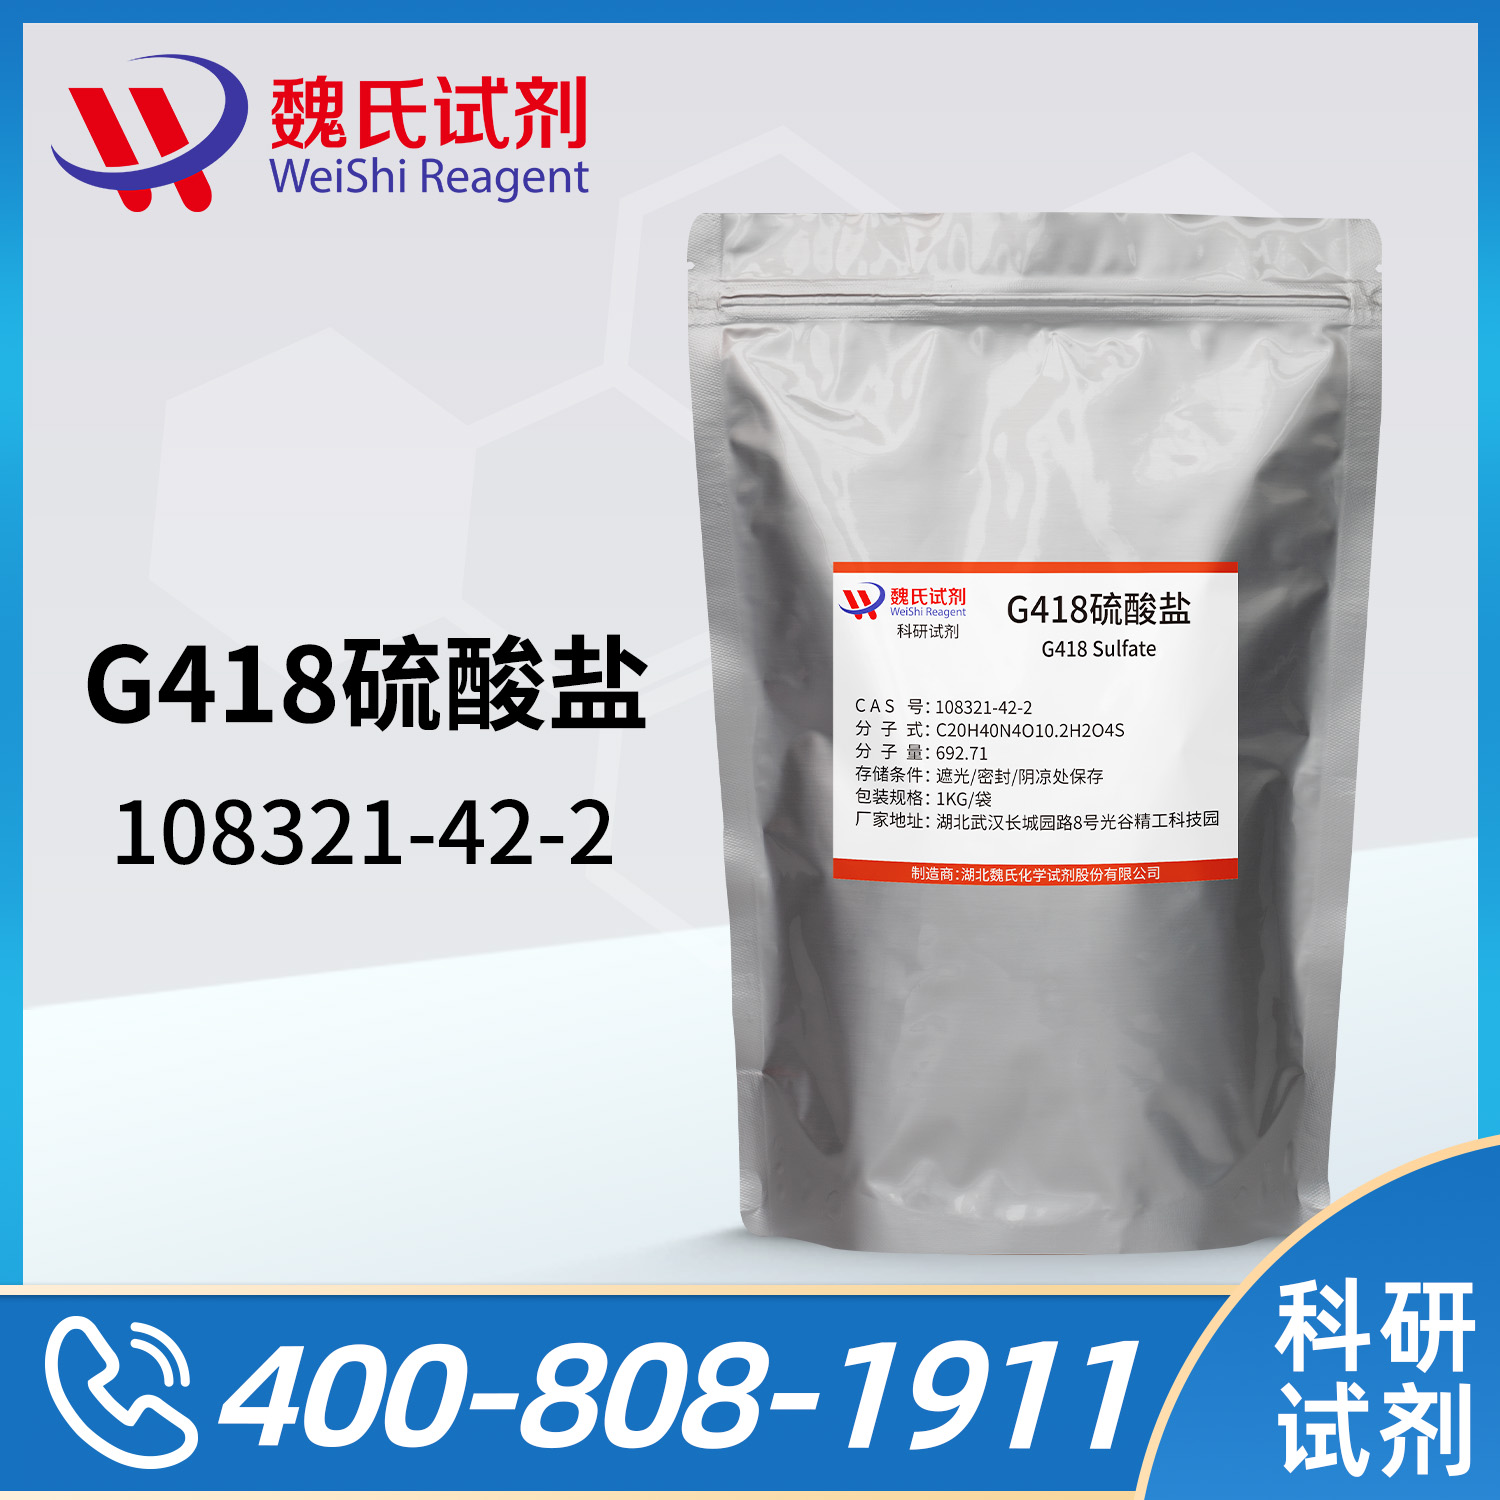 G418硫酸盐；遗传霉素；Q1（G418硫酸盐）